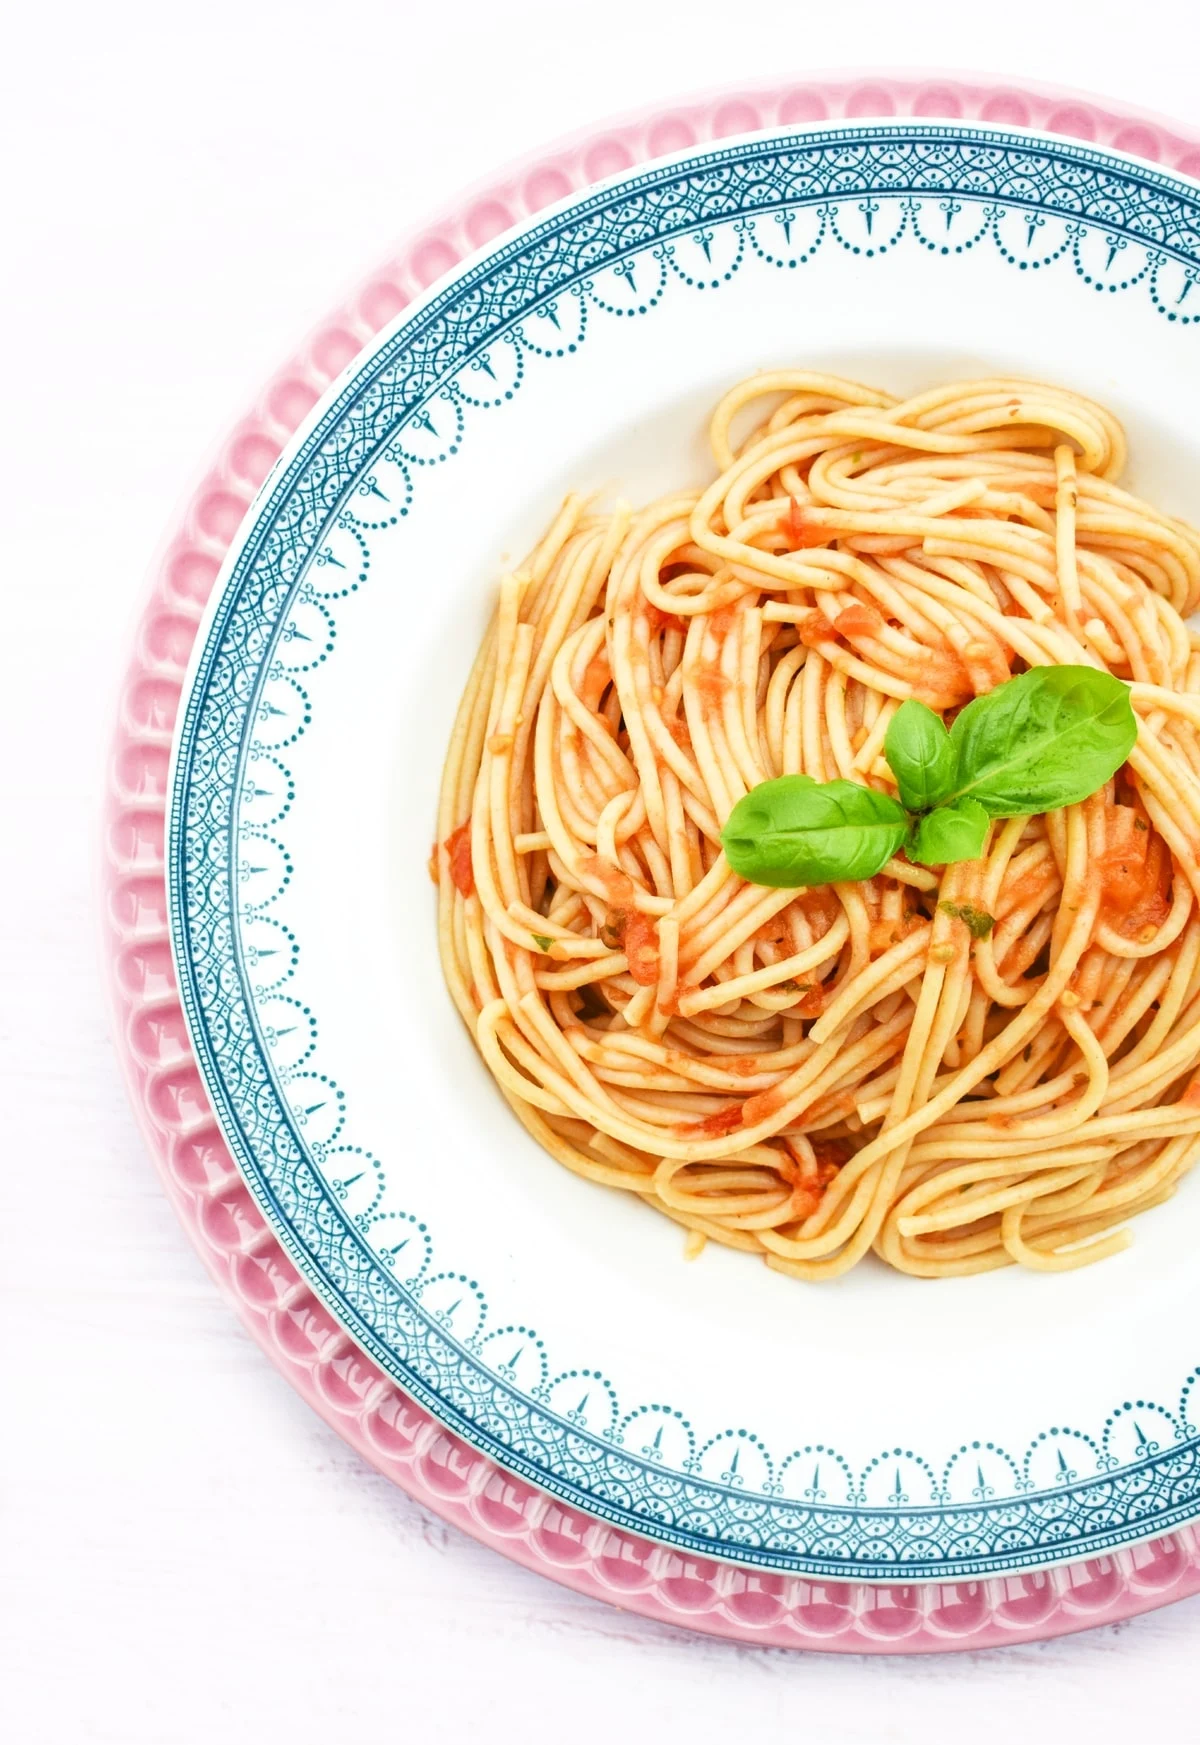 spaghetti coated in a roasted tomato sauce.